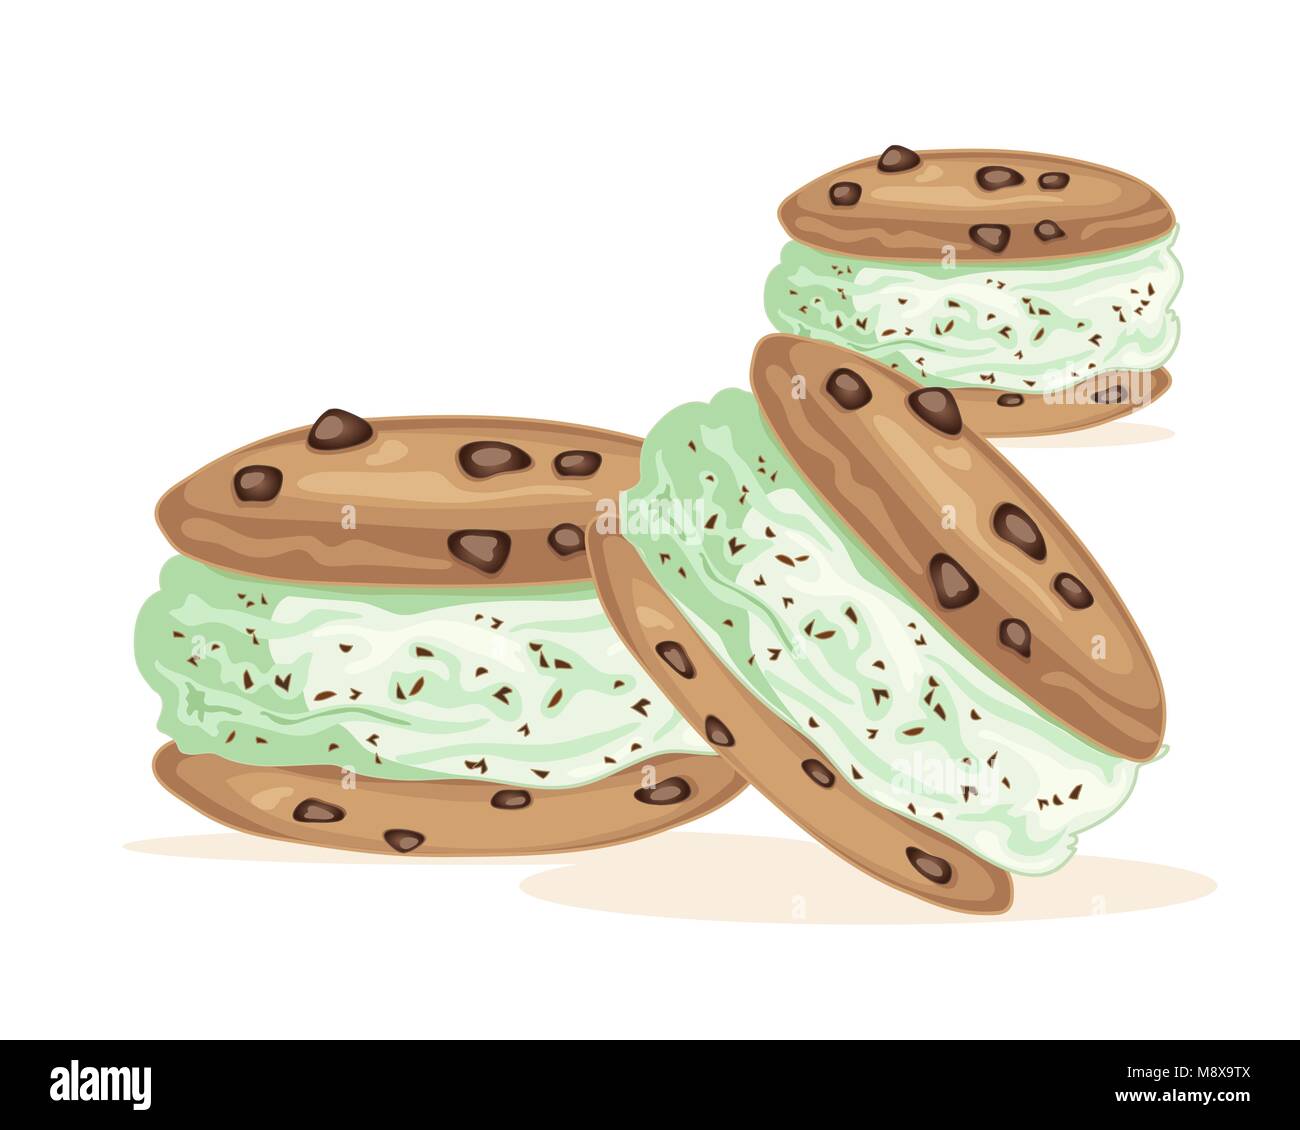 Un vecteur illustration en eps 10 format d'un sandwich à la crème glacée faite avec des biscuits aux pépites de chocolat et une boule de crème glacée aux pépites de chocolat menthe Illustration de Vecteur